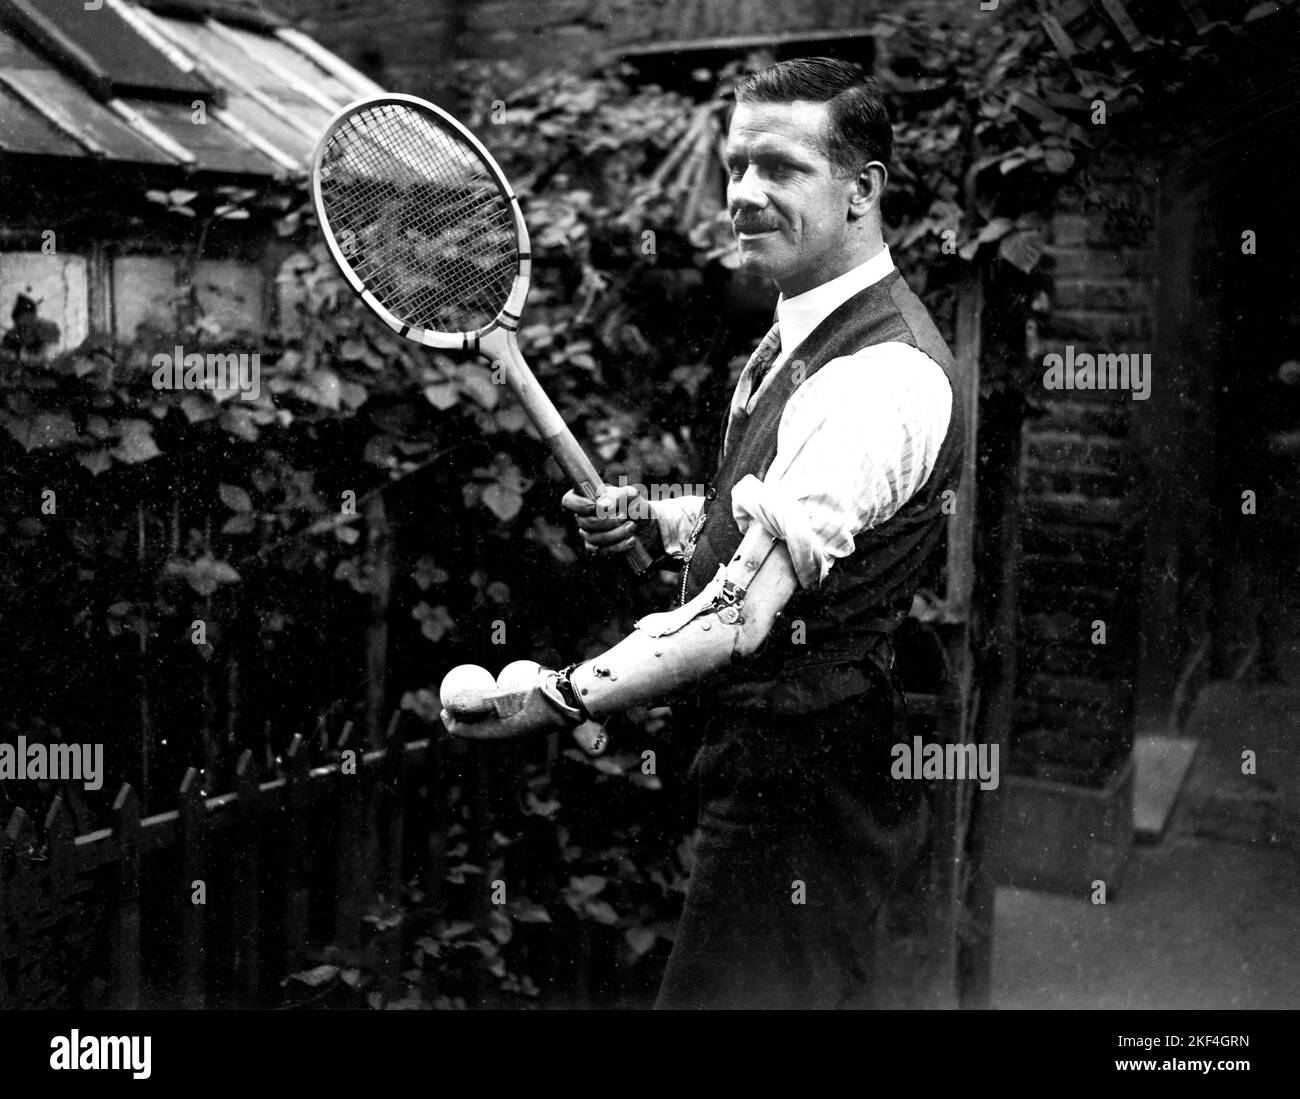 M. F M Parncutt, qui n'a qu'un seul bras, mais est toujours en mesure de  jouer au tennis grâce à une main spécialement adaptée sur son bras  artificiel, qui est conçu pour